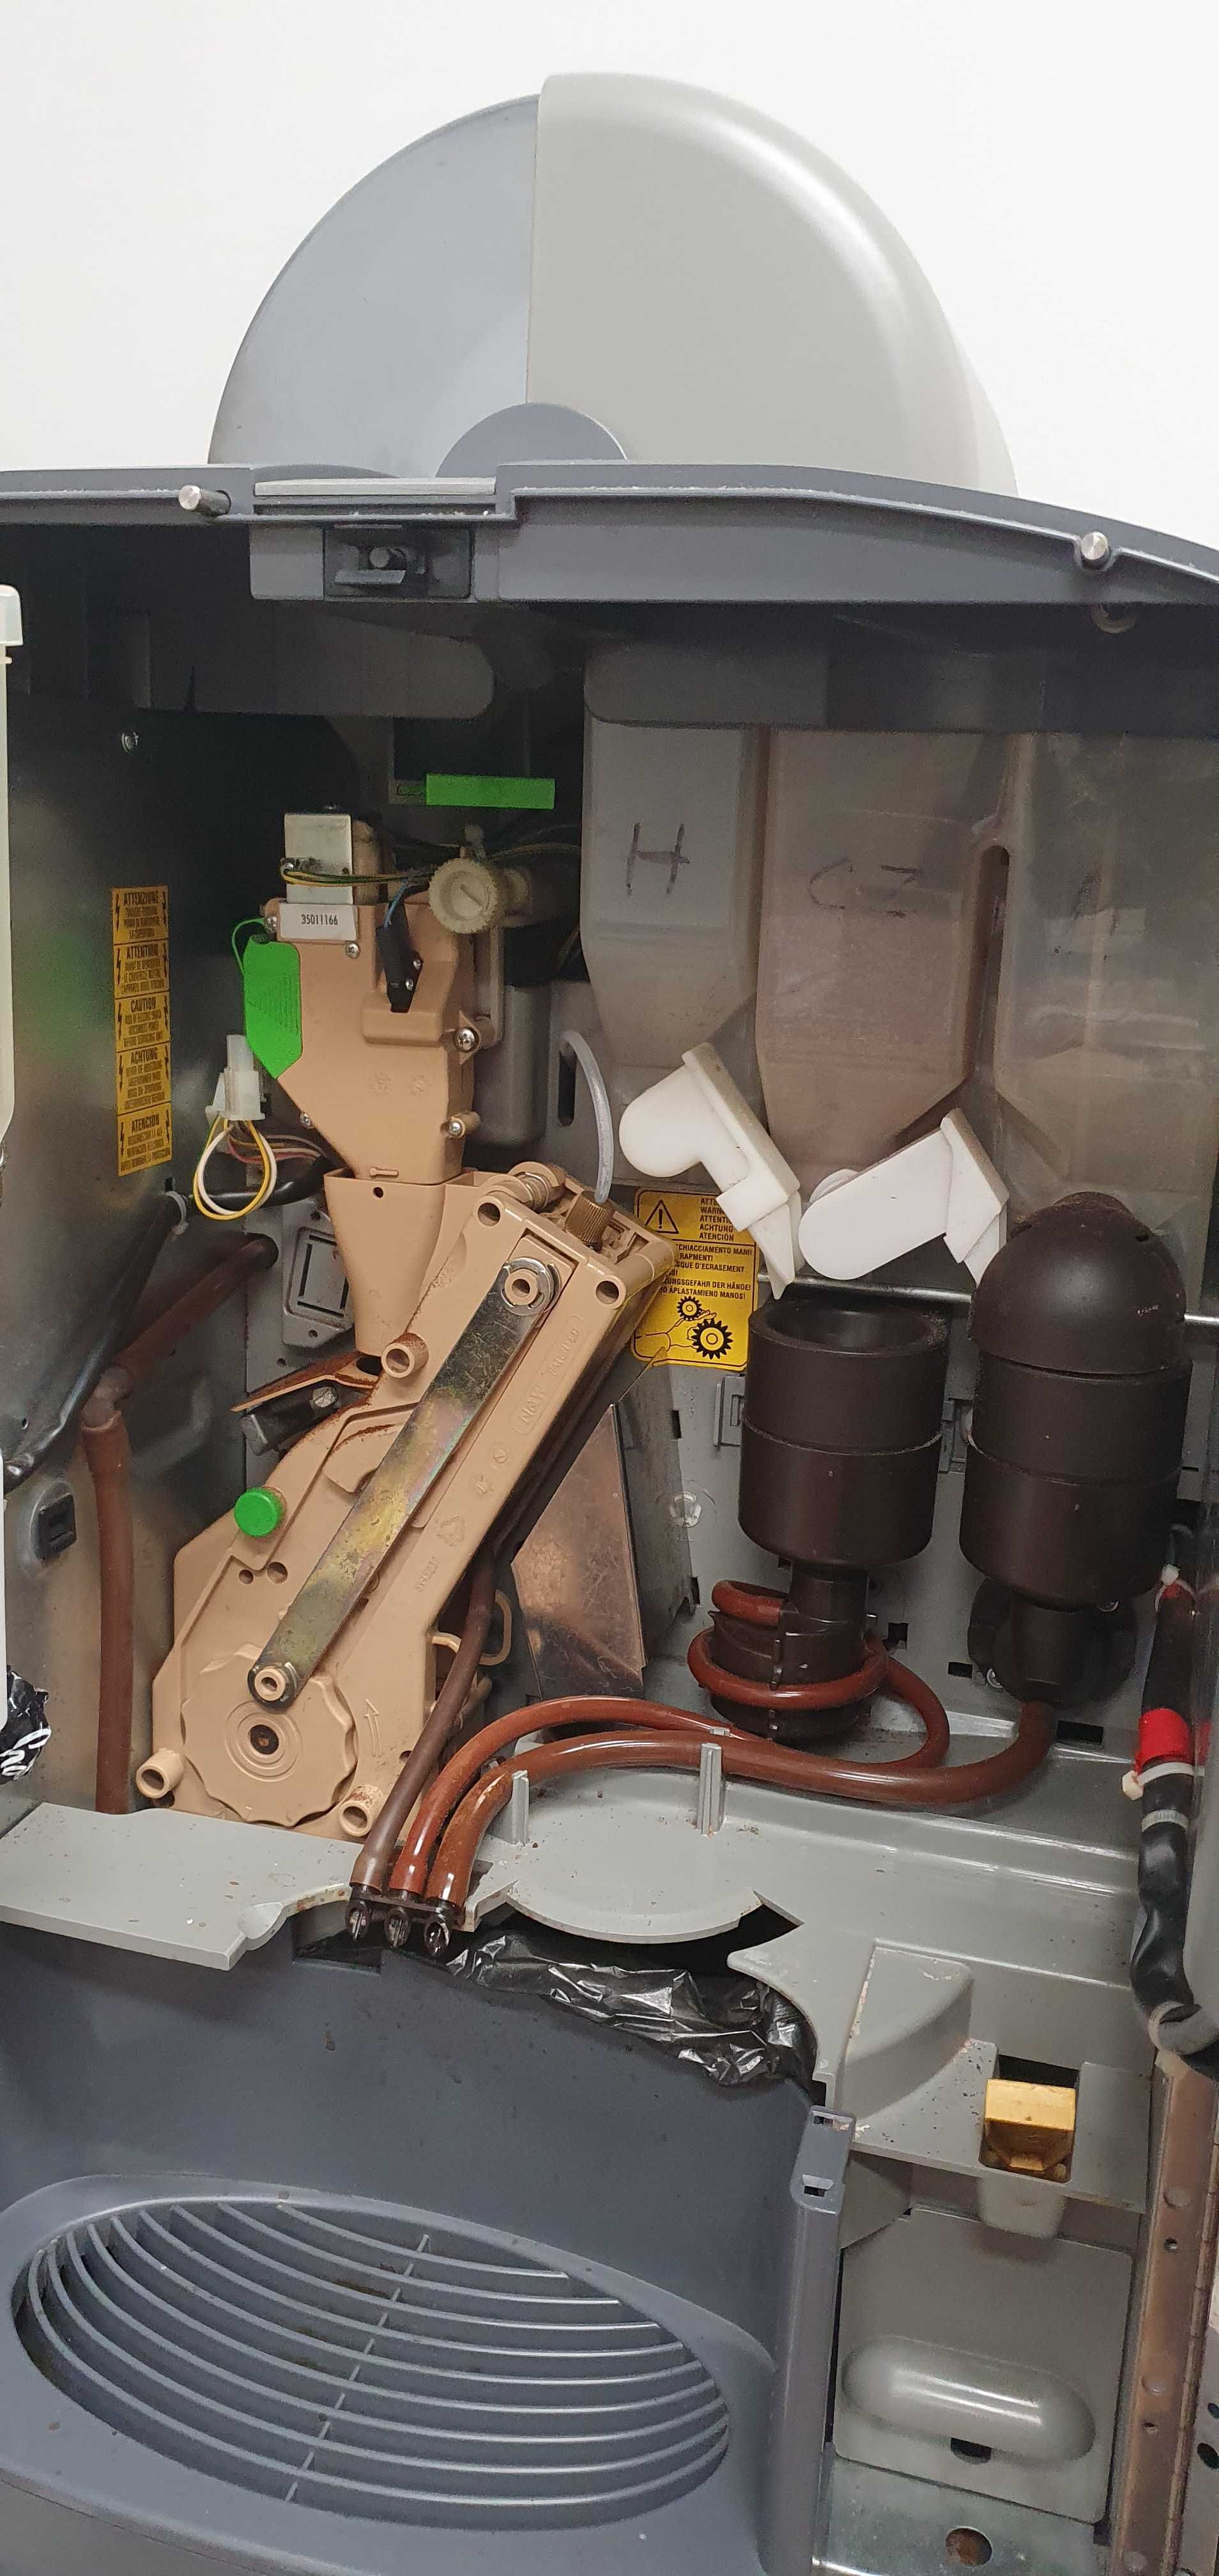 Automat Ekspres Maszyna do kawy z czekoladą i podajnikiem kubków